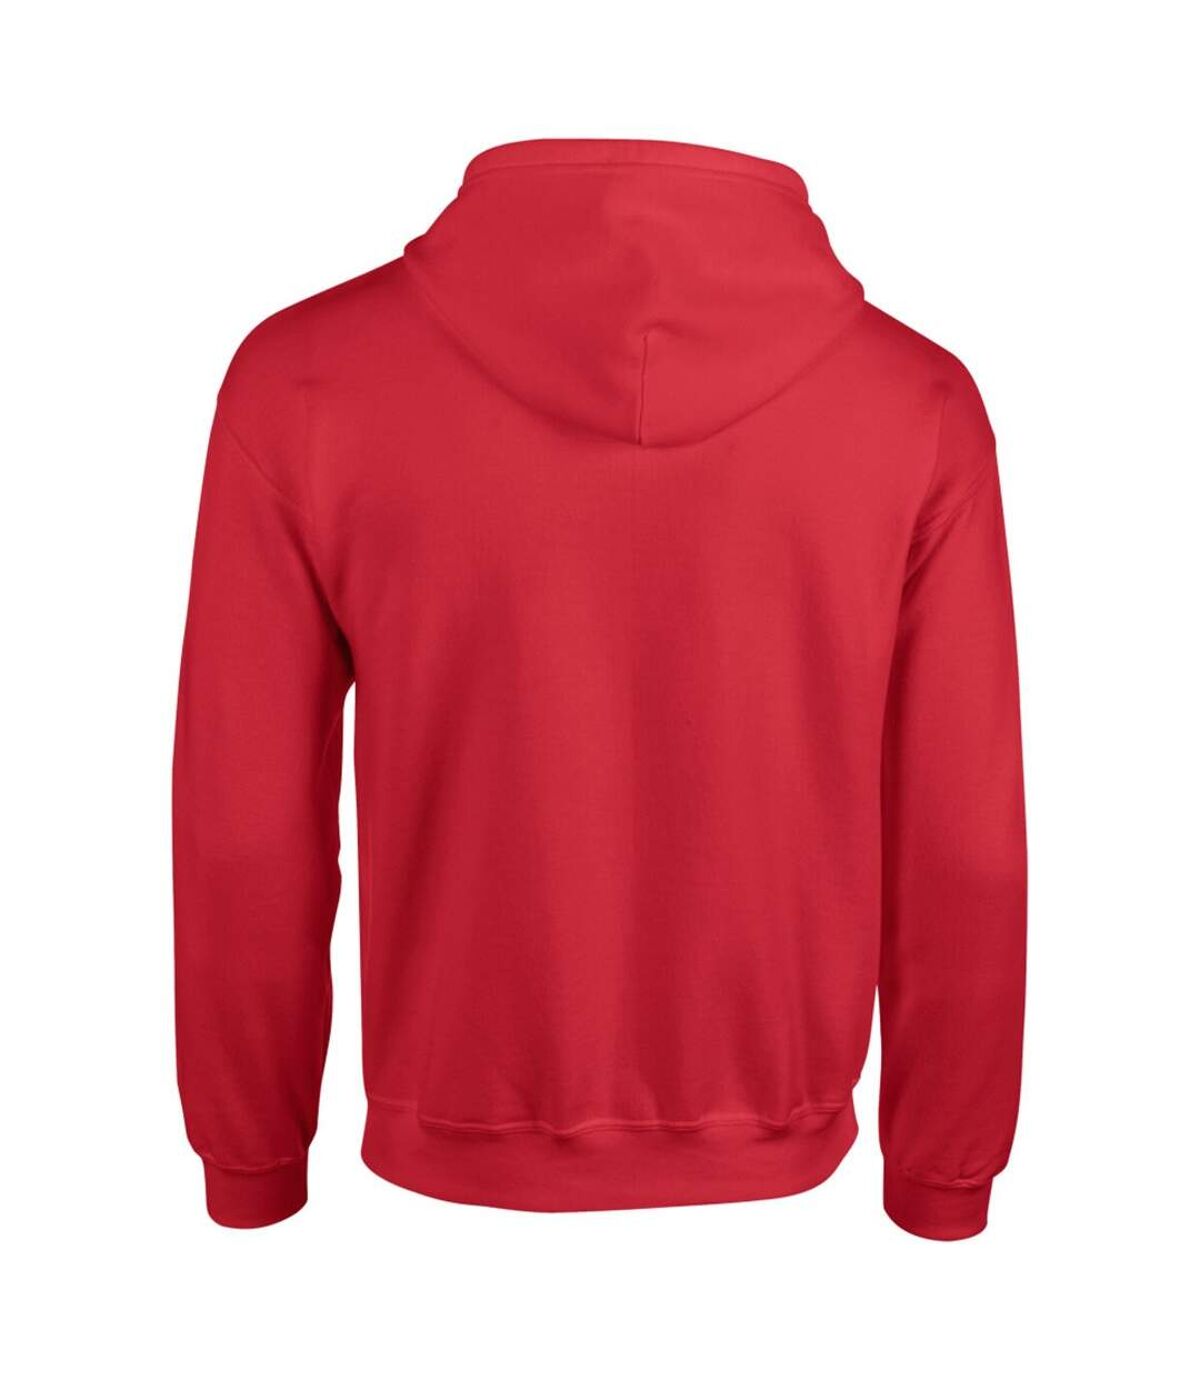 Gildan - Sweatshirt - Homme (Rouge) - UTBC471